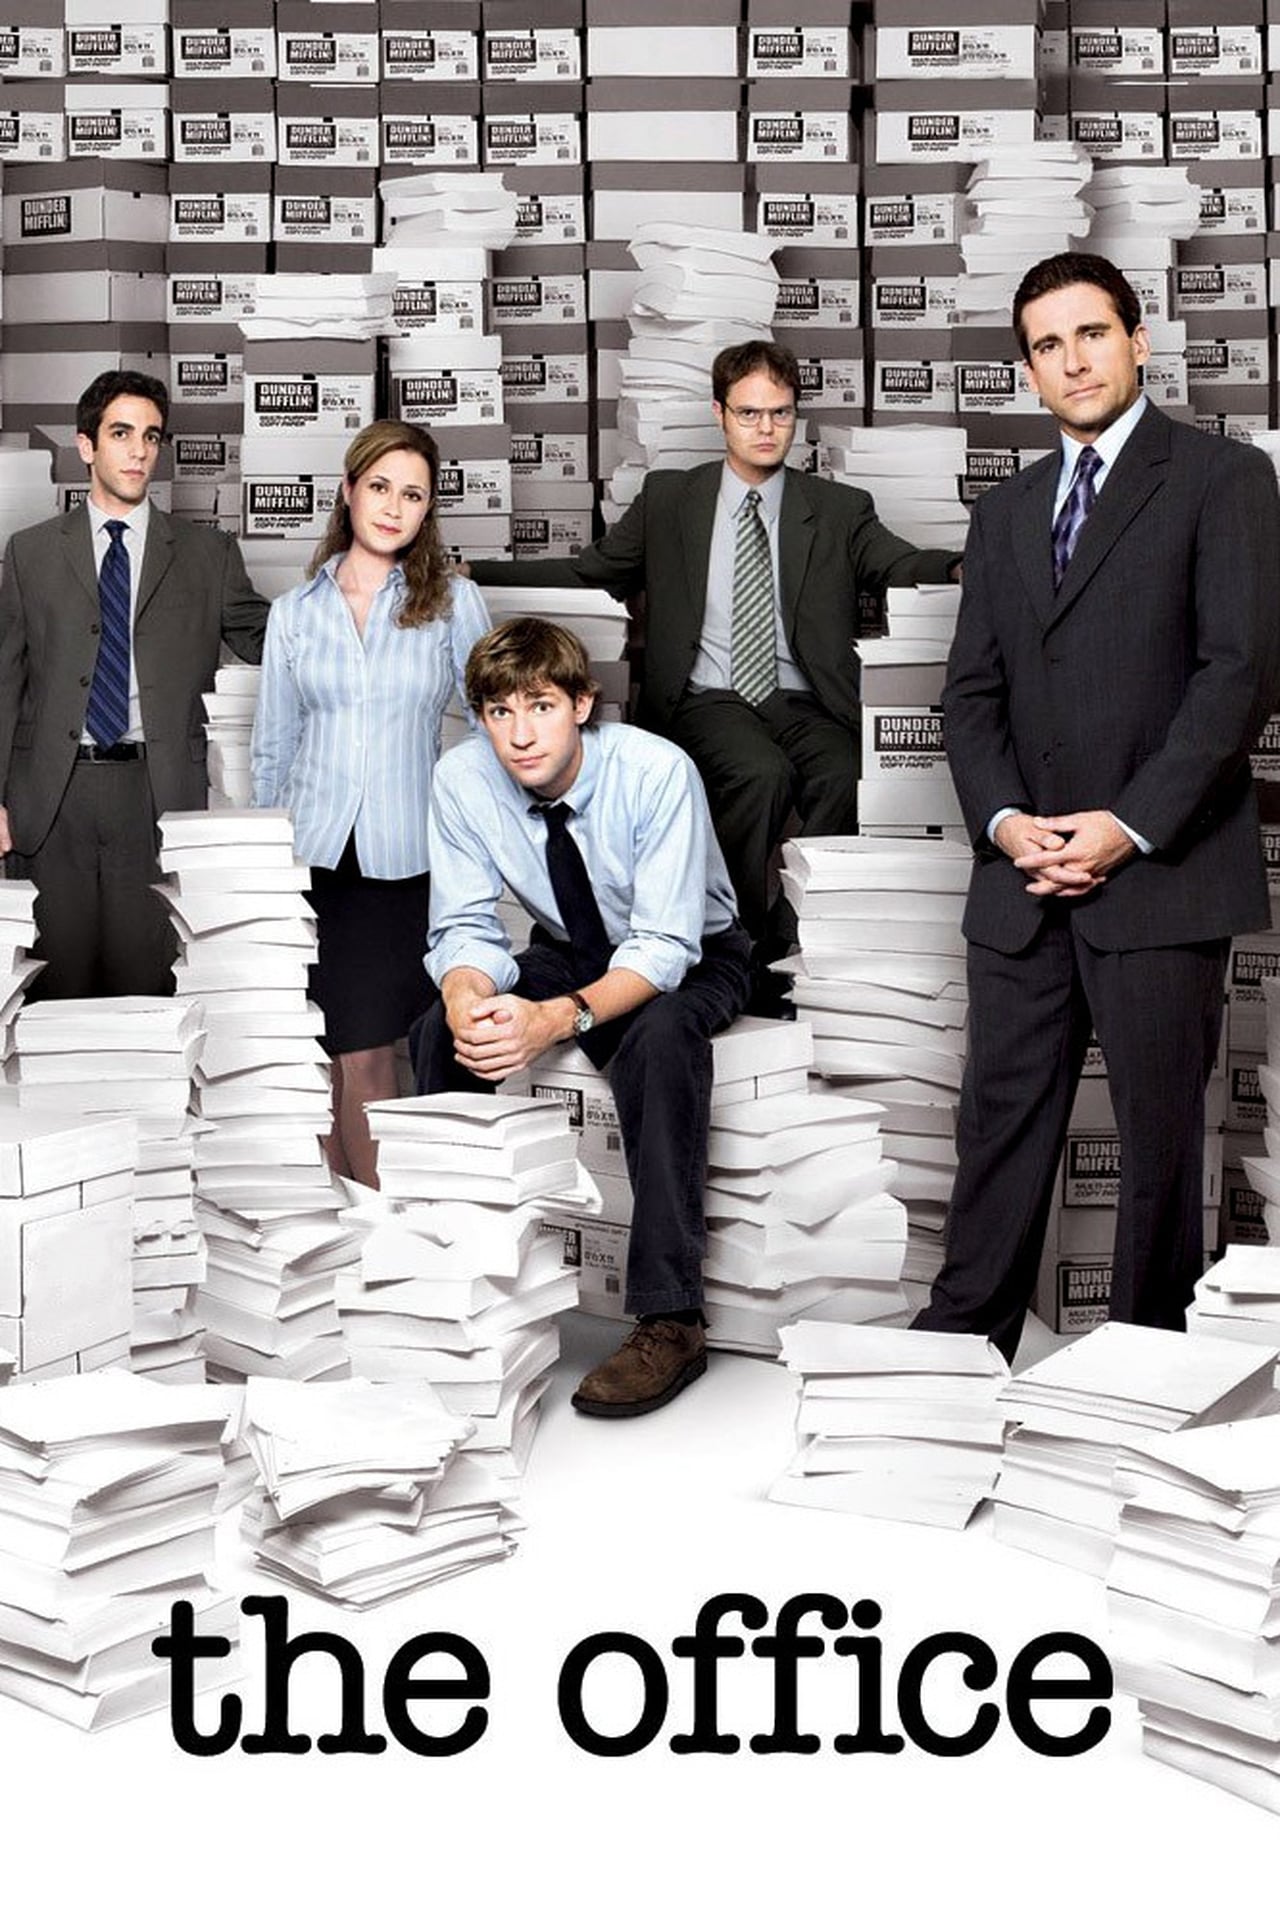 The Office (US) Season 3